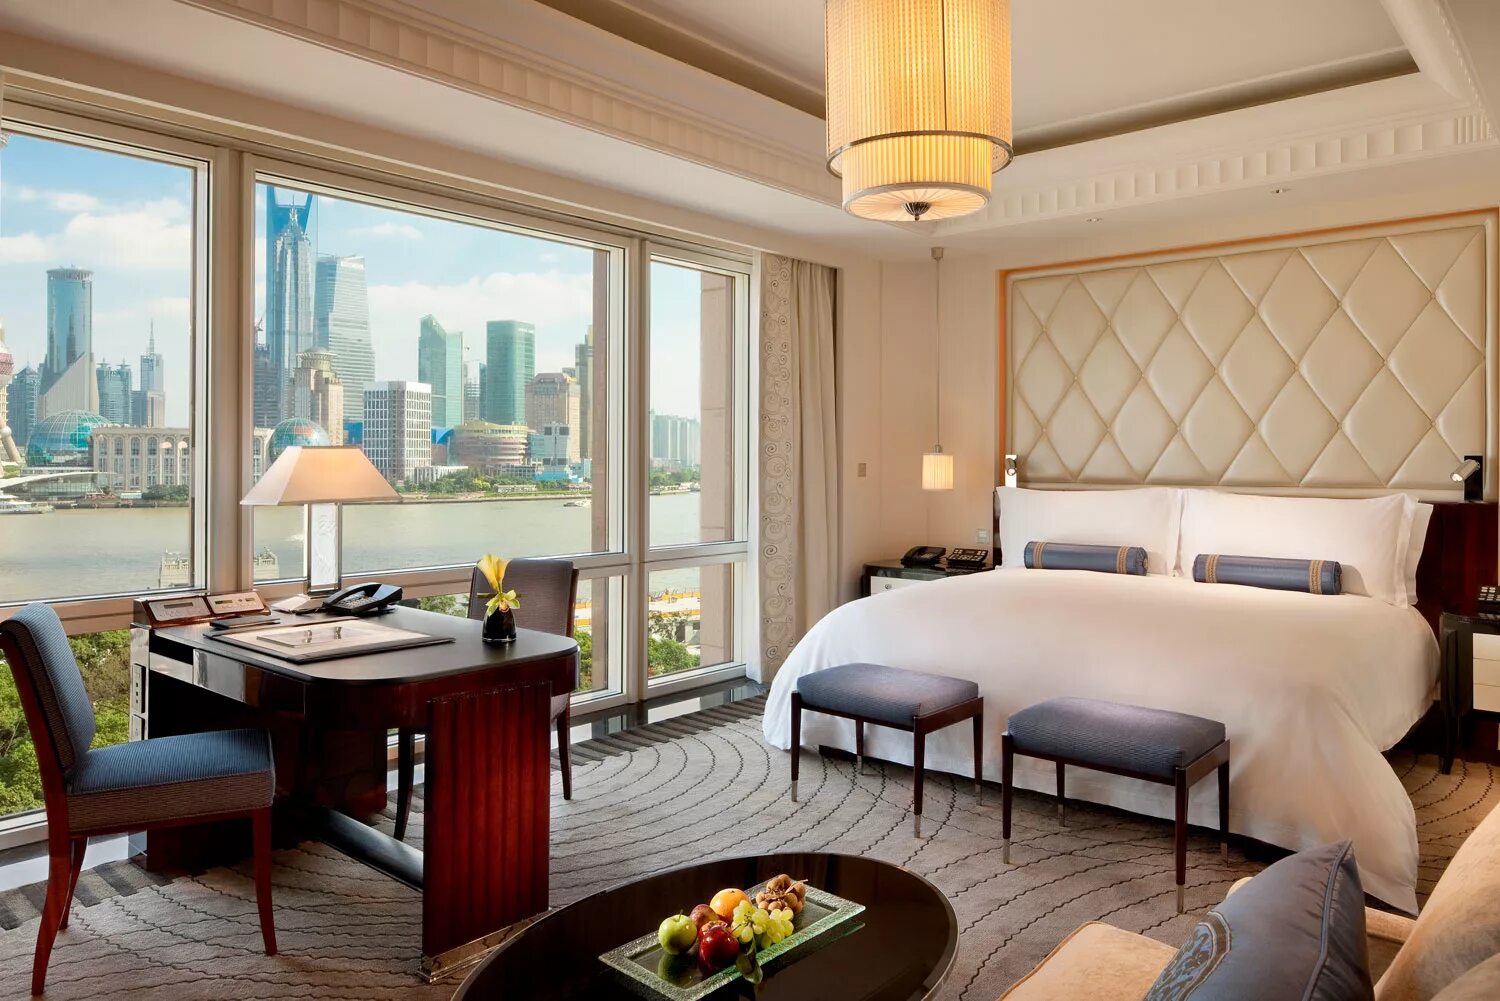 Пенинсула Шанхай. Отель Пенинсула Пекин. The Peninsula Shanghai президентский номер. The Peninsula Гонконг. Отель hotels luxury